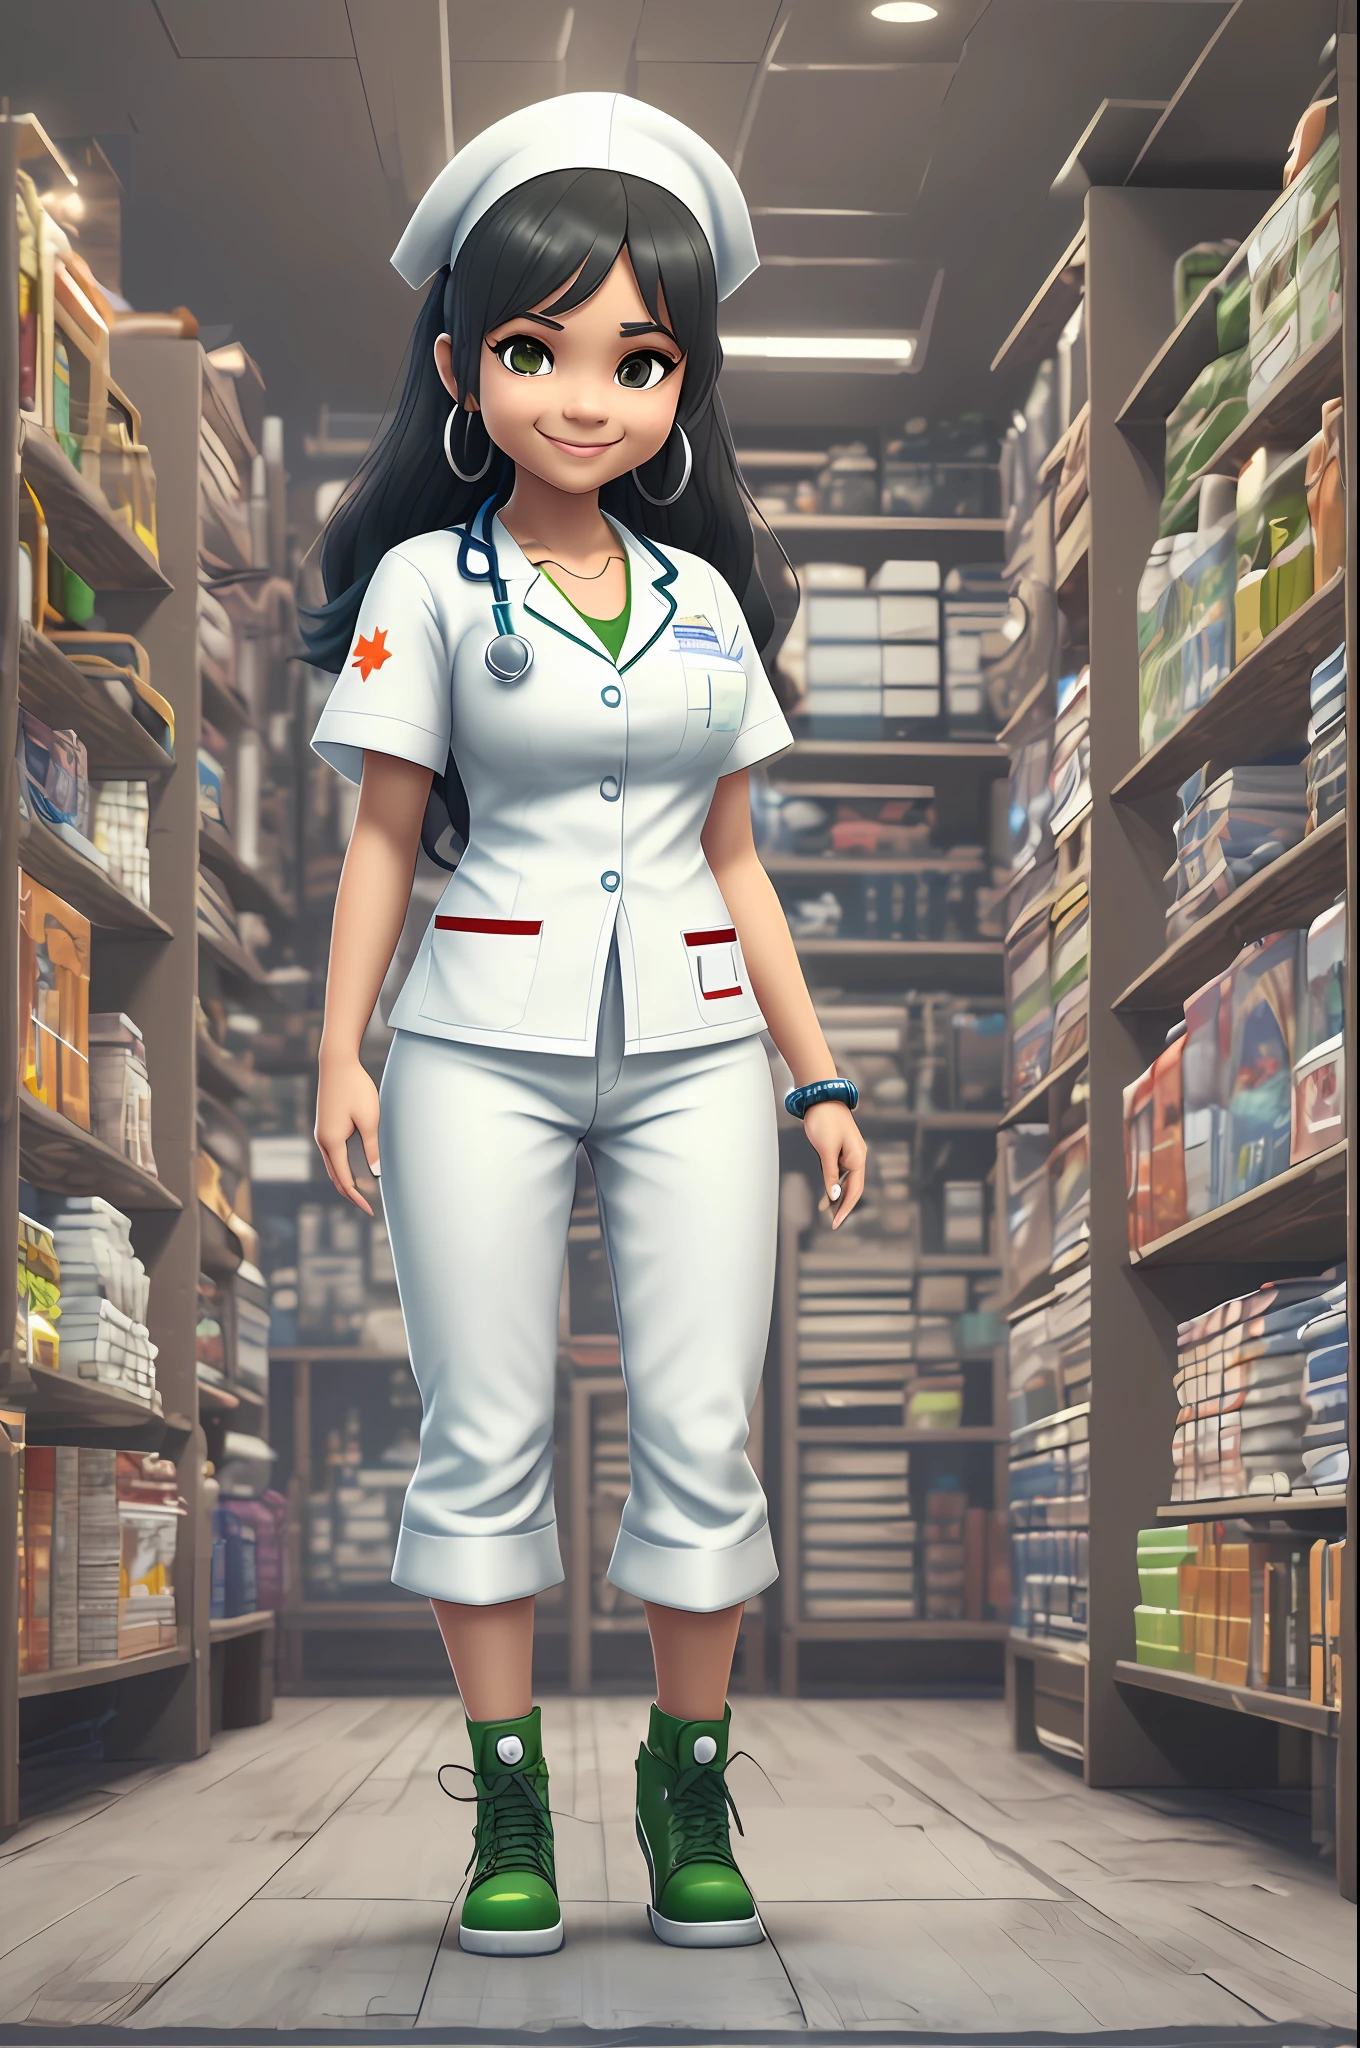 Imagem 3D de uma enfermeira mulata de corpo inteiro, De pé, com calças brancas rosto sorridente bonito, olhos castanhos, cabelo preto comprido, vestindo um uniforme de enfermeira branco com pequenos detalhes verdes e azuis em um estilo chibi e Disney, sem fundo, detalhado, Ultra alta definição, 8K, no estilo dos Megascans Quixel, Loja de digitalização 3D e jogos épicos